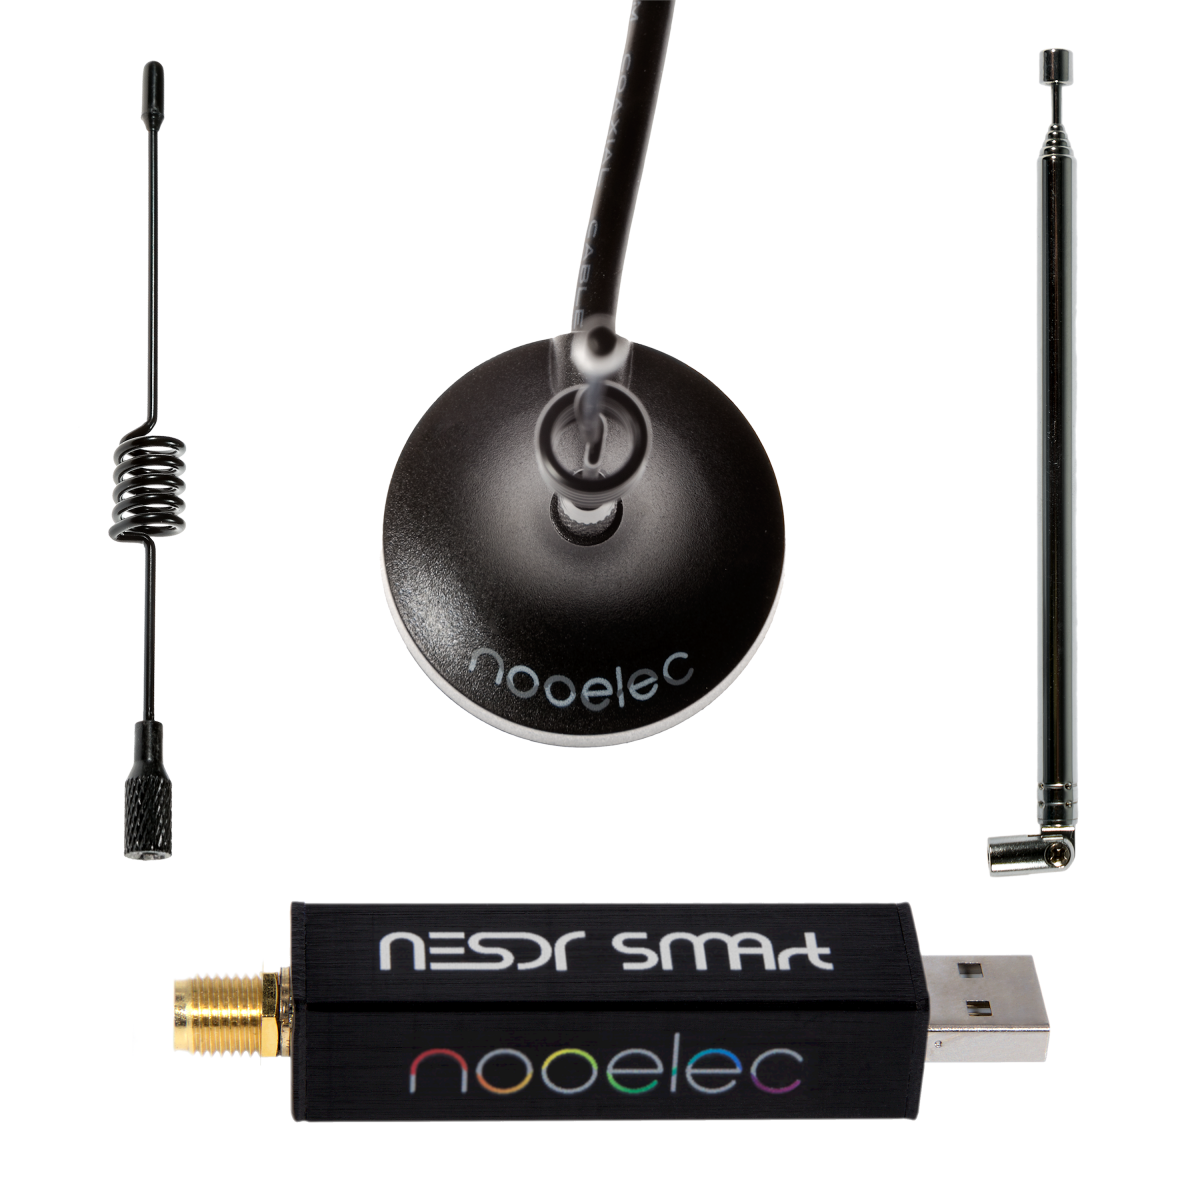 Nooelec - Nooelec NESDR SMArt v5 Bundle - HF/VHF/UHF (100kHz-1.75GHz)  RTL-SDR Kit with 3 Antennas. RTL2832U & R820T2-Based Software Defined Radio